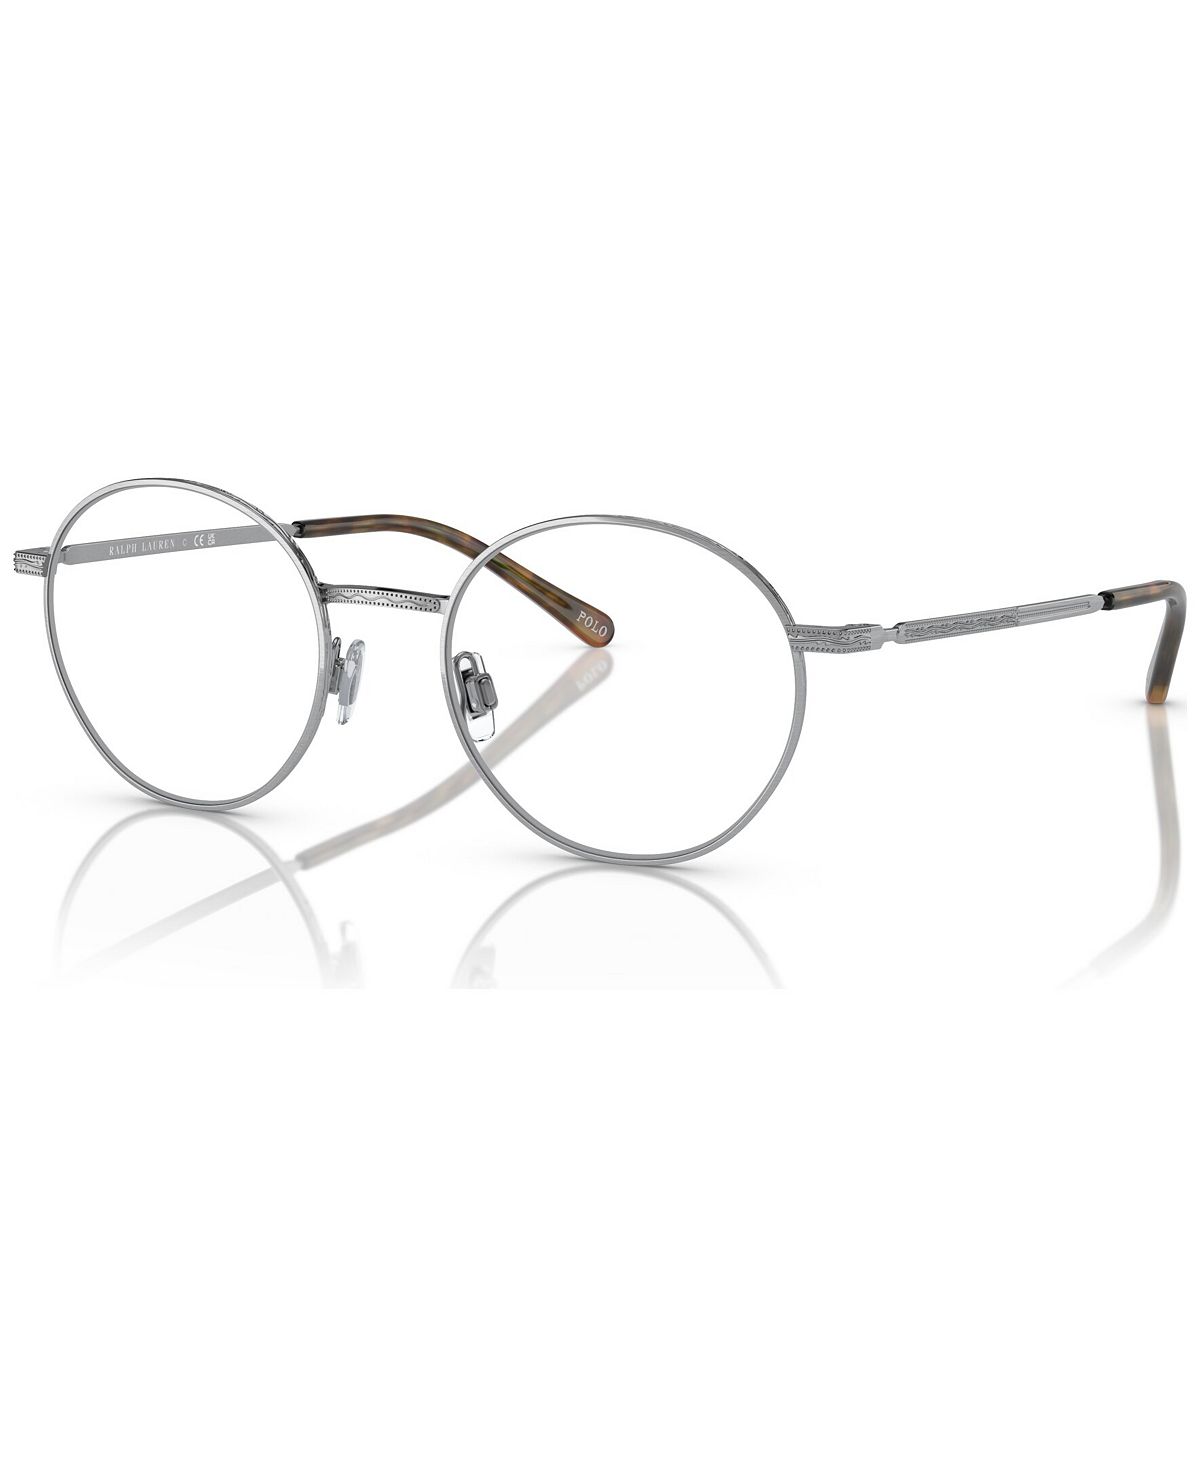 Мужские круглые очки, PH1217 52 Polo Ralph Lauren